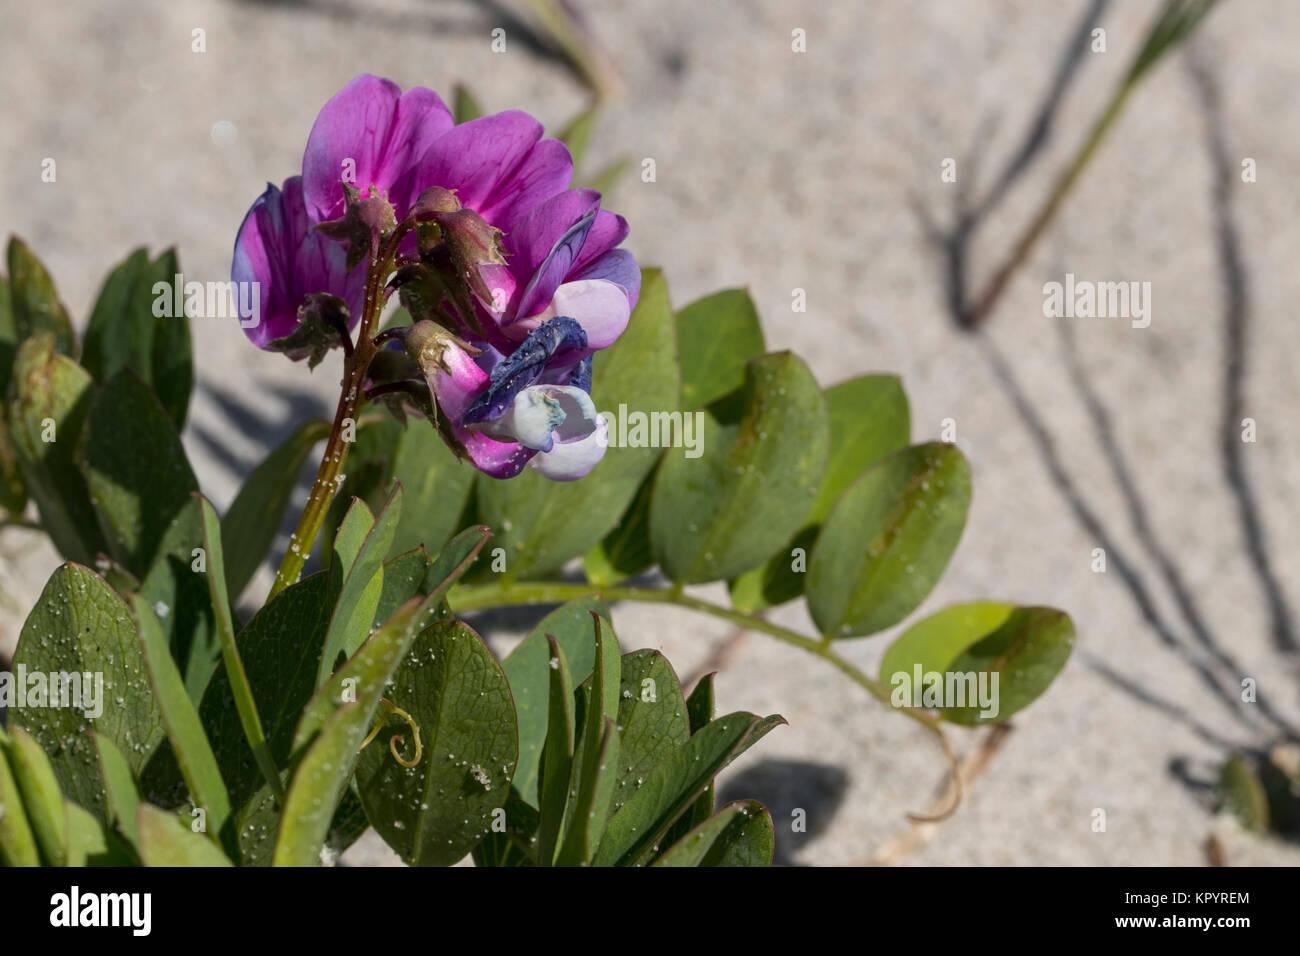 Flowering Sea Pea (Lathyrus japonicus ssp. maritimus), Stock Photo